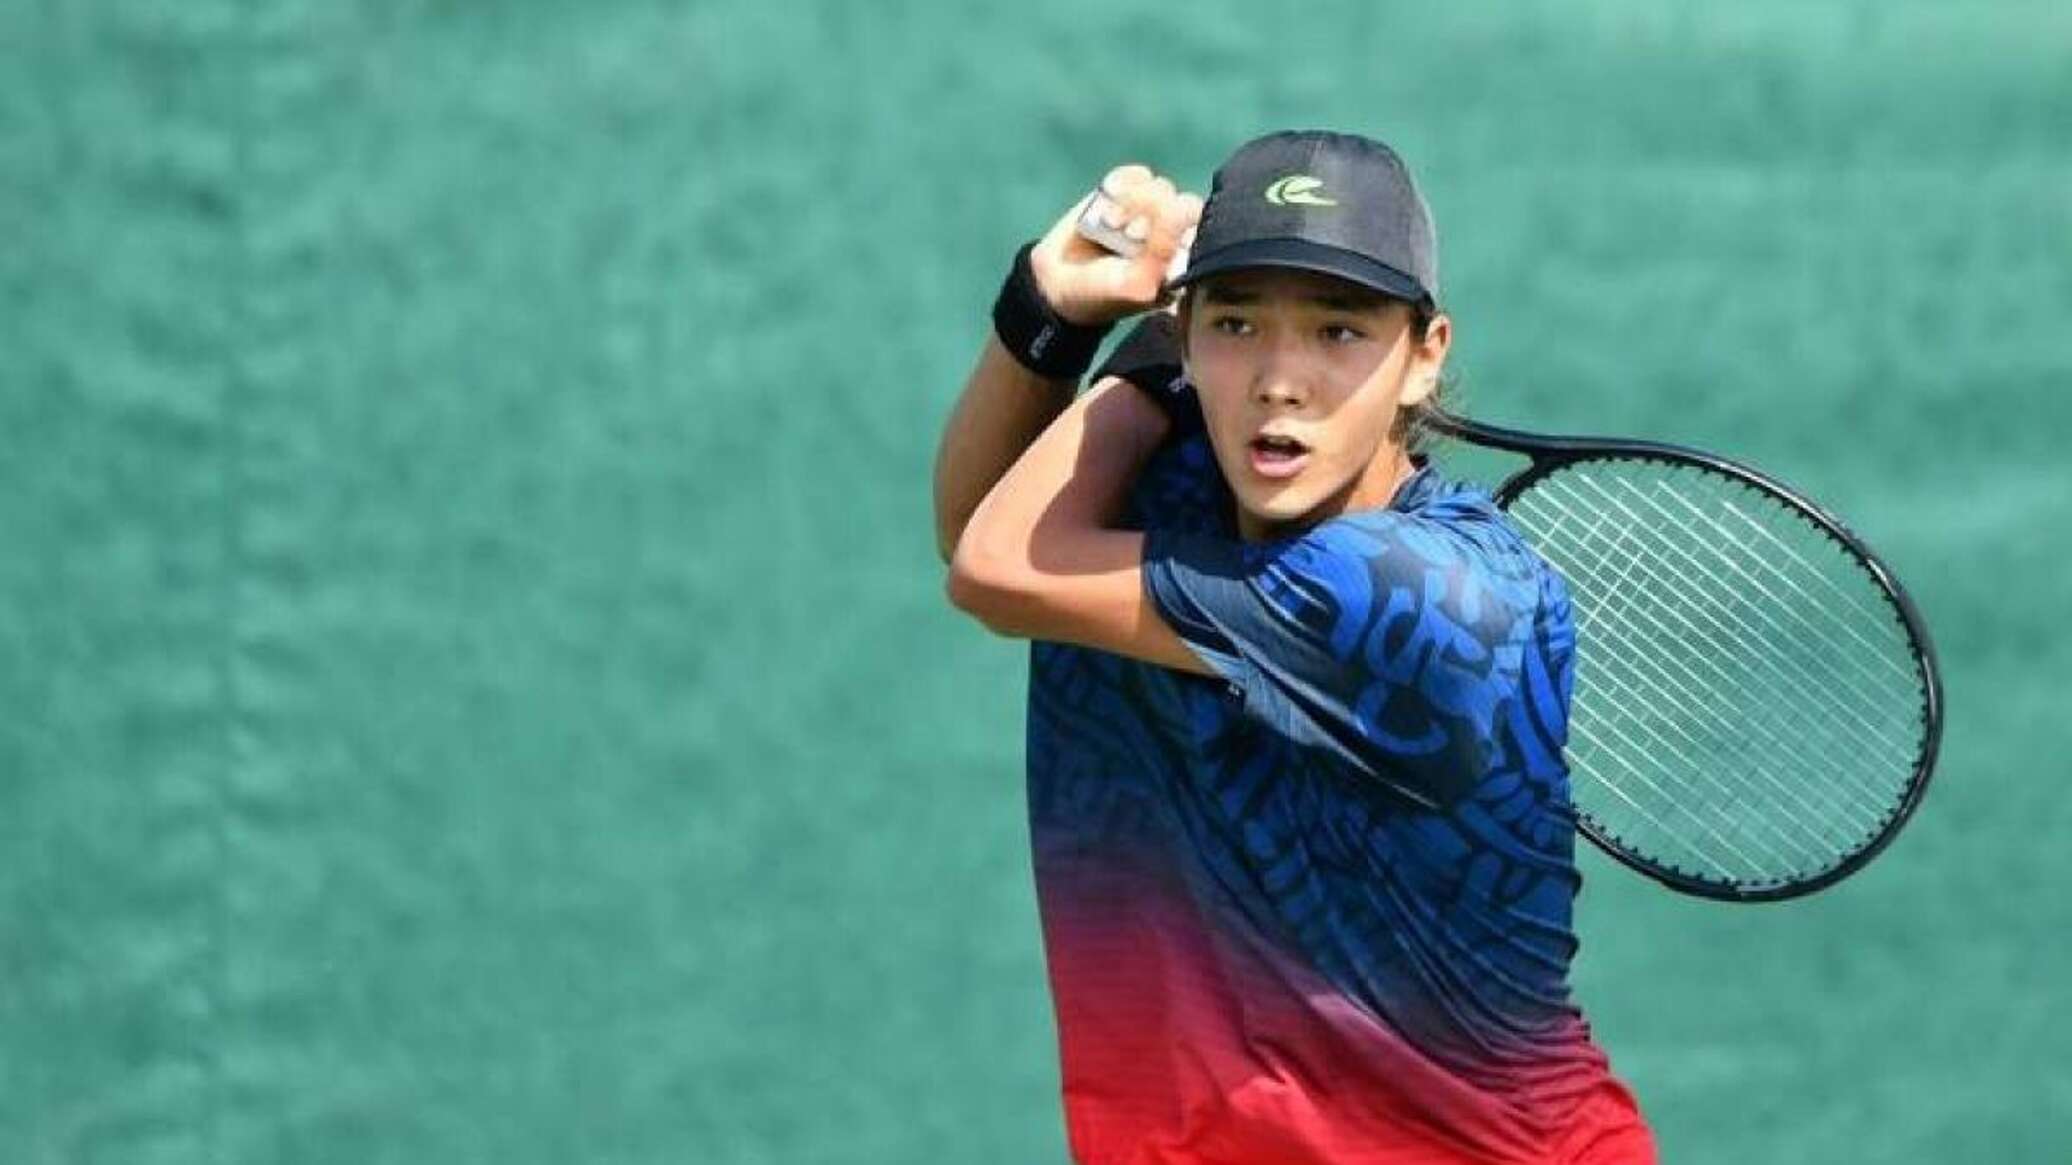 По-взрослому: юный теннисист из Казахстана сыграл на профессиональном турнире в Мадриде